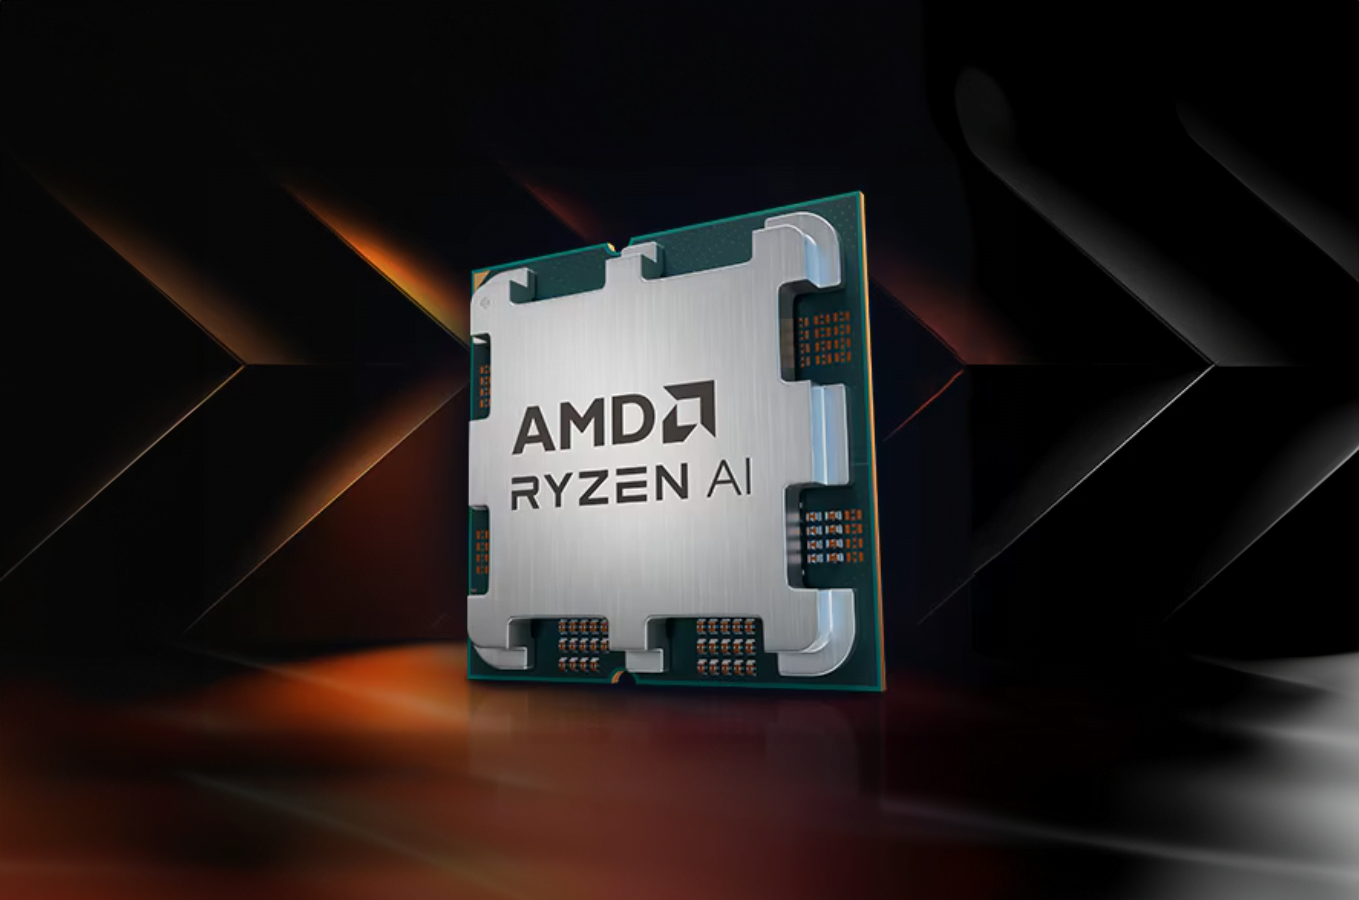 Procesor AMD Ryzen AI na tle geometrycznych kształtów i oświetlenia w ciepłych barwach.